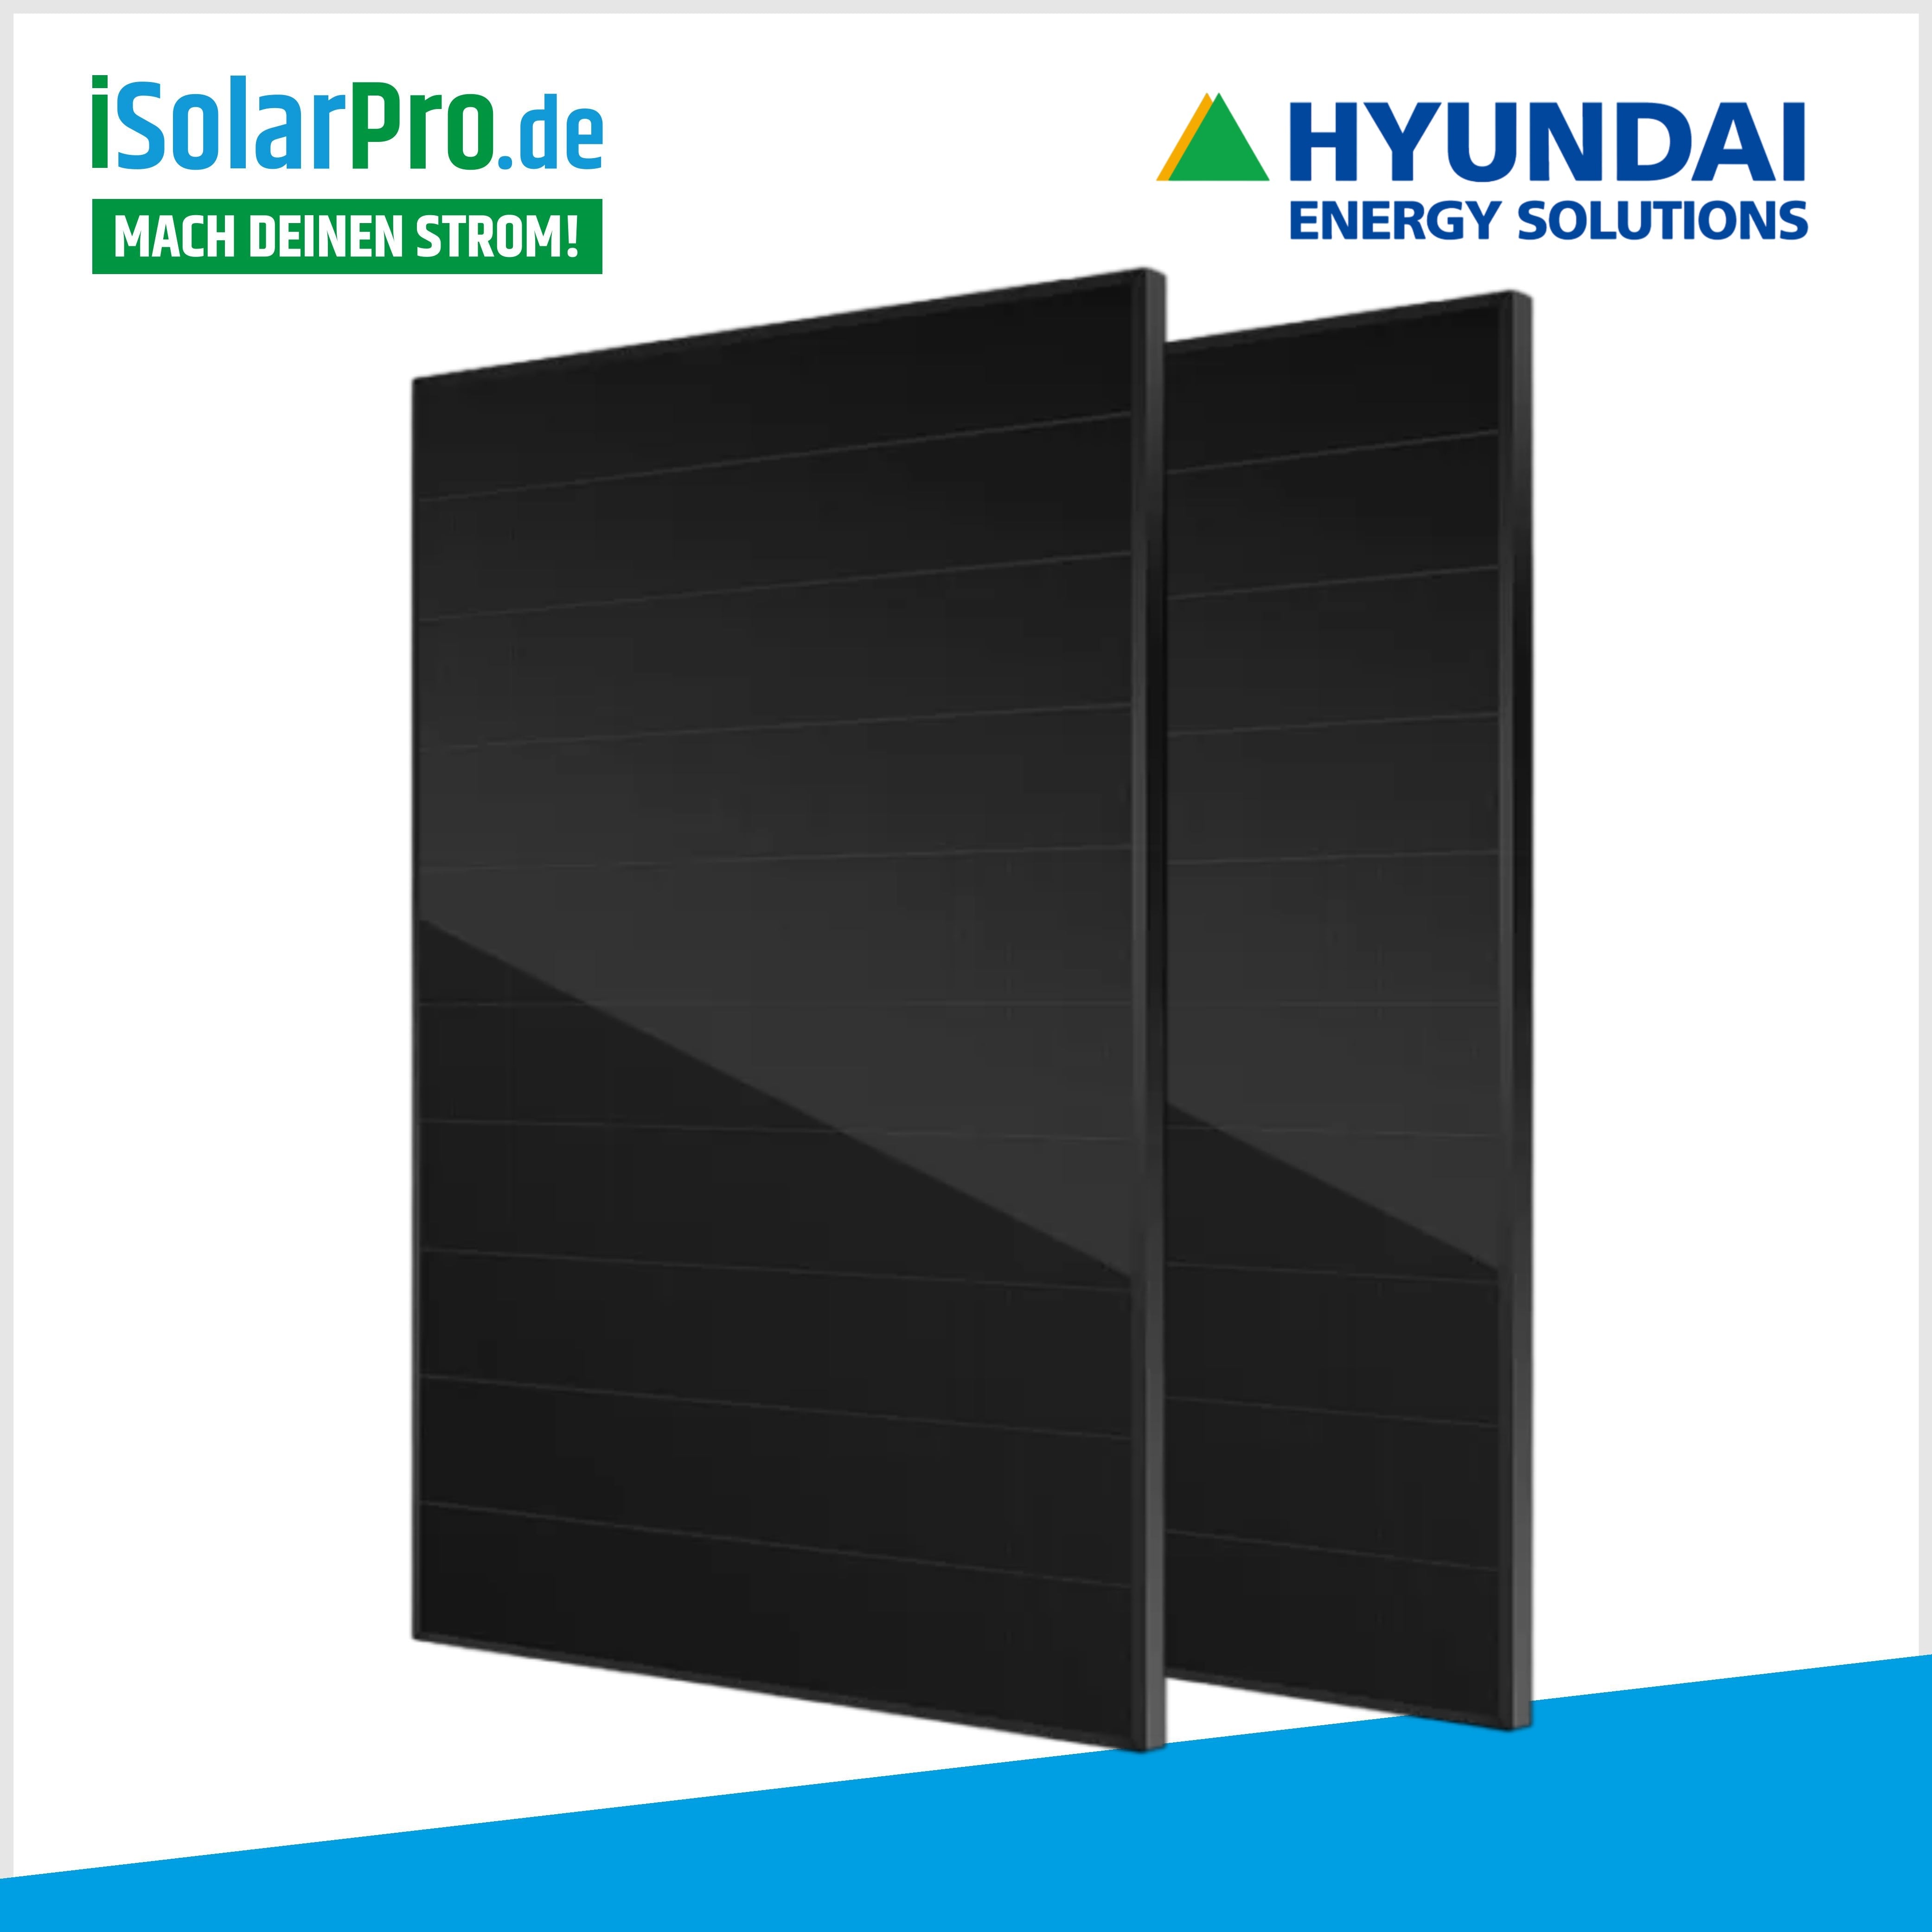 6kW PV-Anlage Set 15x 415W HYUNDAI Solarmodule + 6kW Deye Wechselrichter +6,14 kWh PV-Speicher Deye + Wallbox zappi